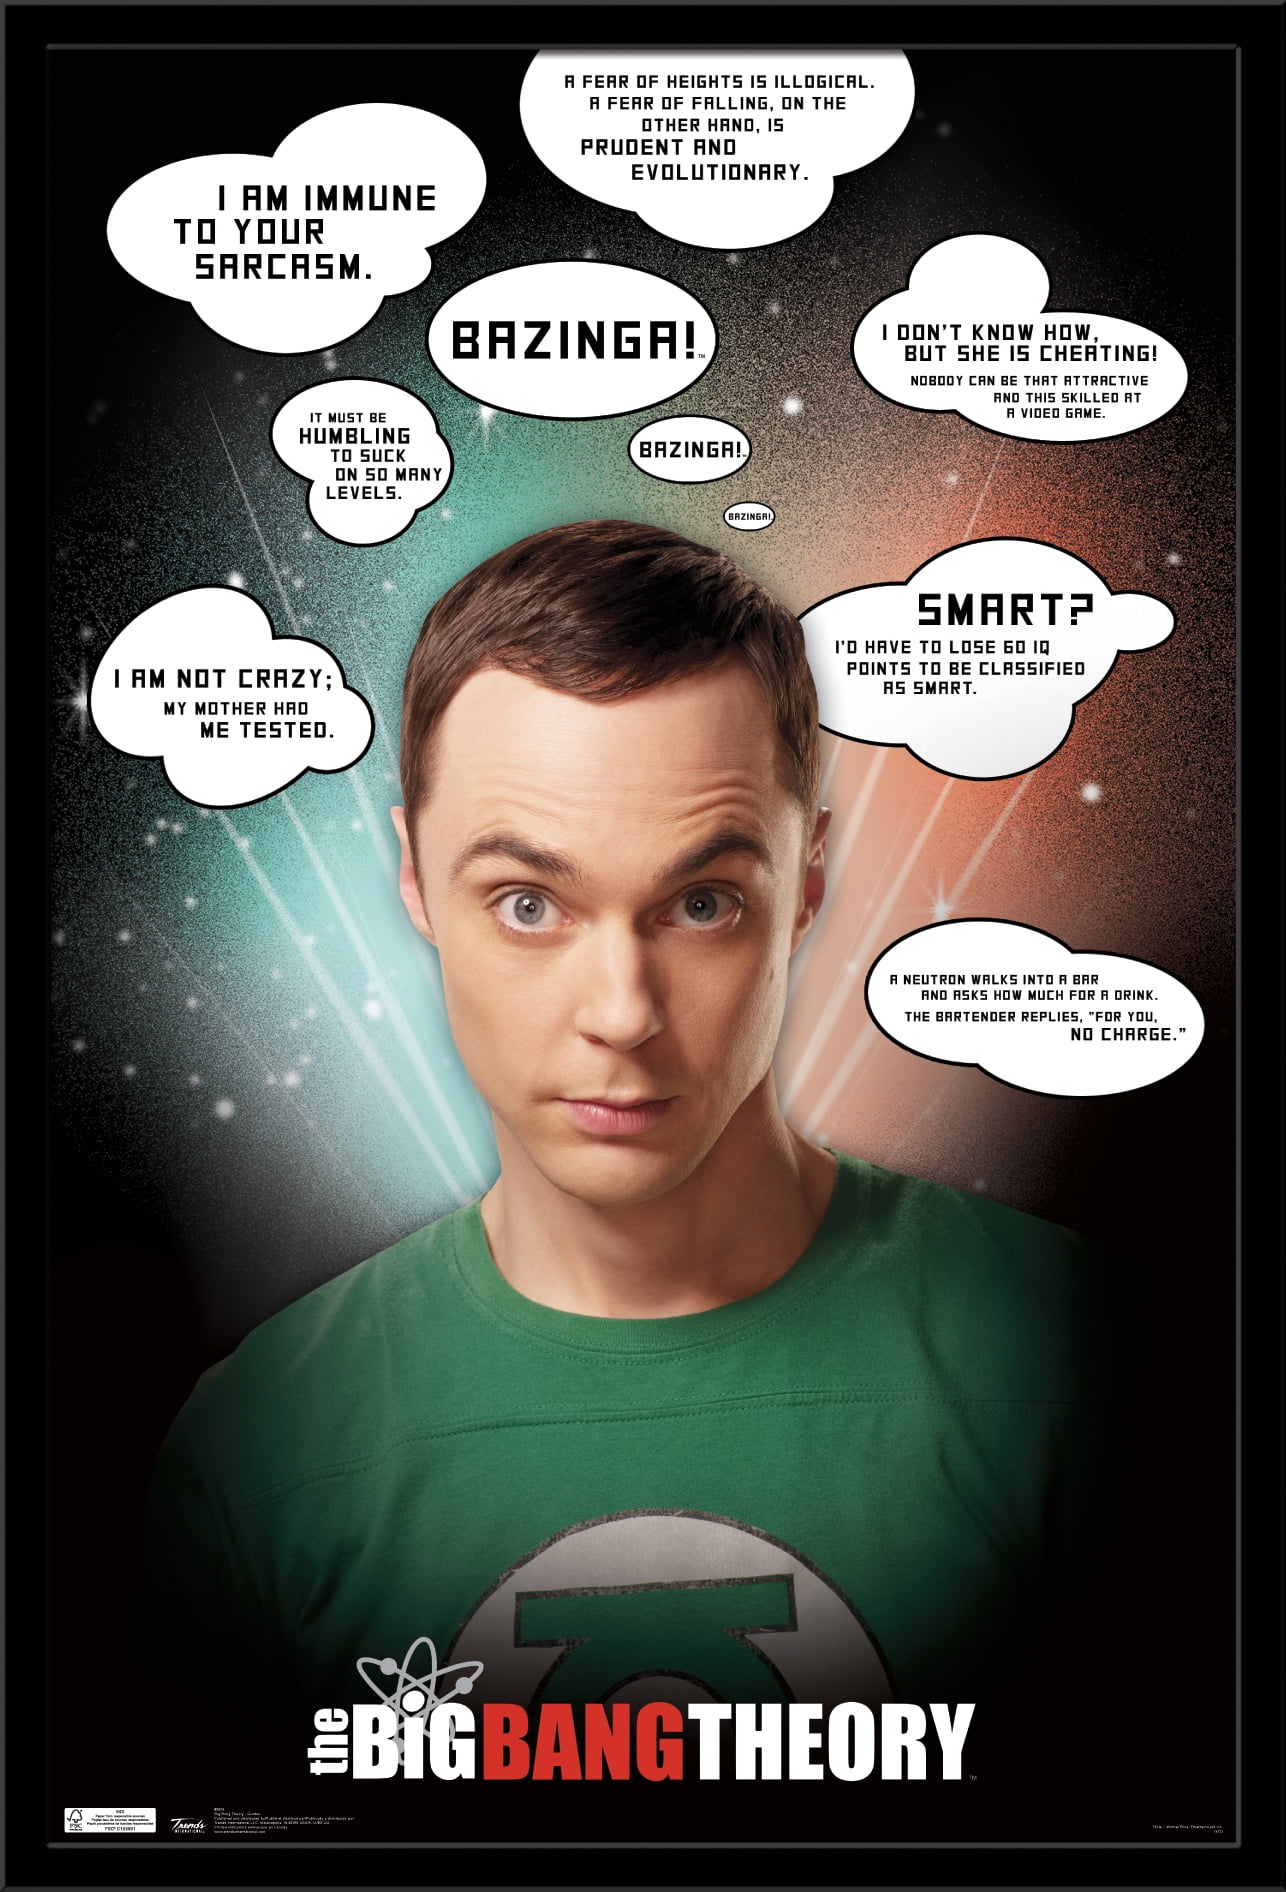 The Big Bang Theory - Quotes Wall Poster, 22.375